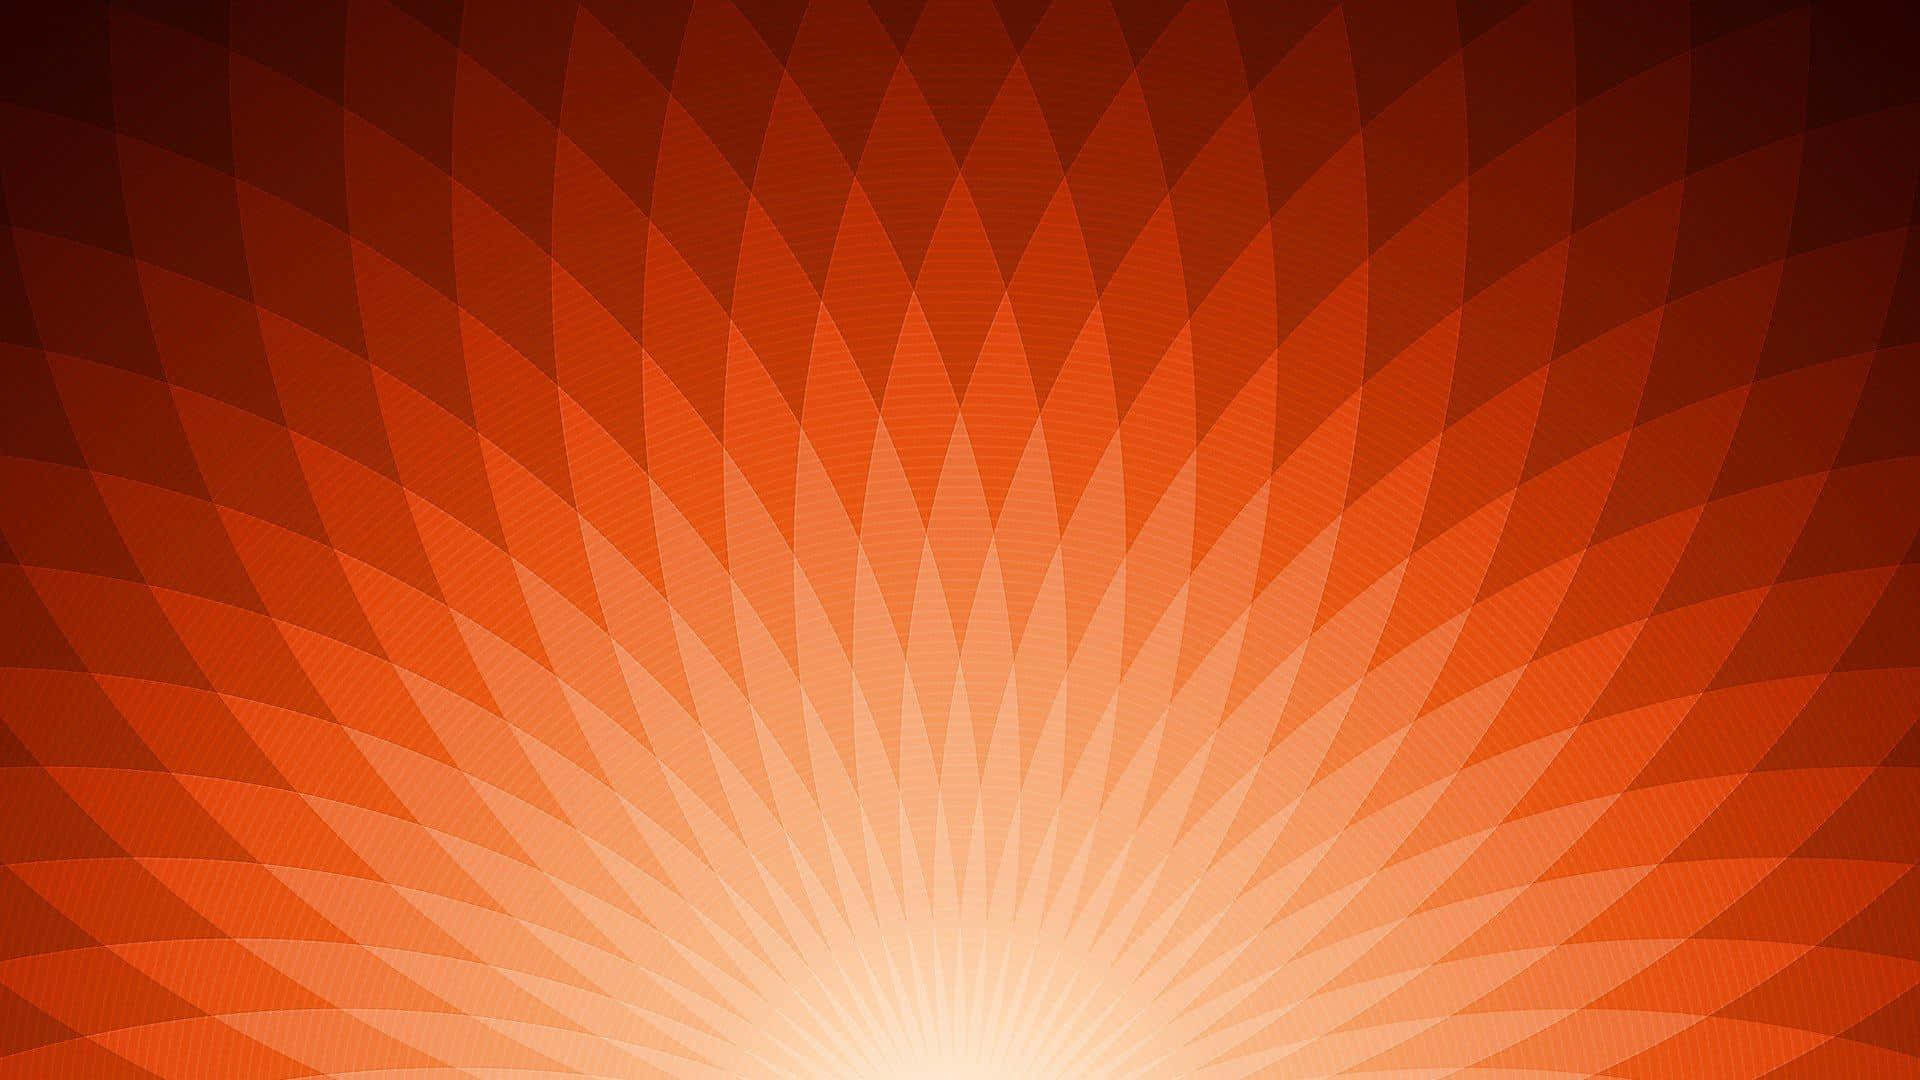 Einorangefarbenes Abstraktes Hintergrundbild Mit Einem Sonnenstrahl